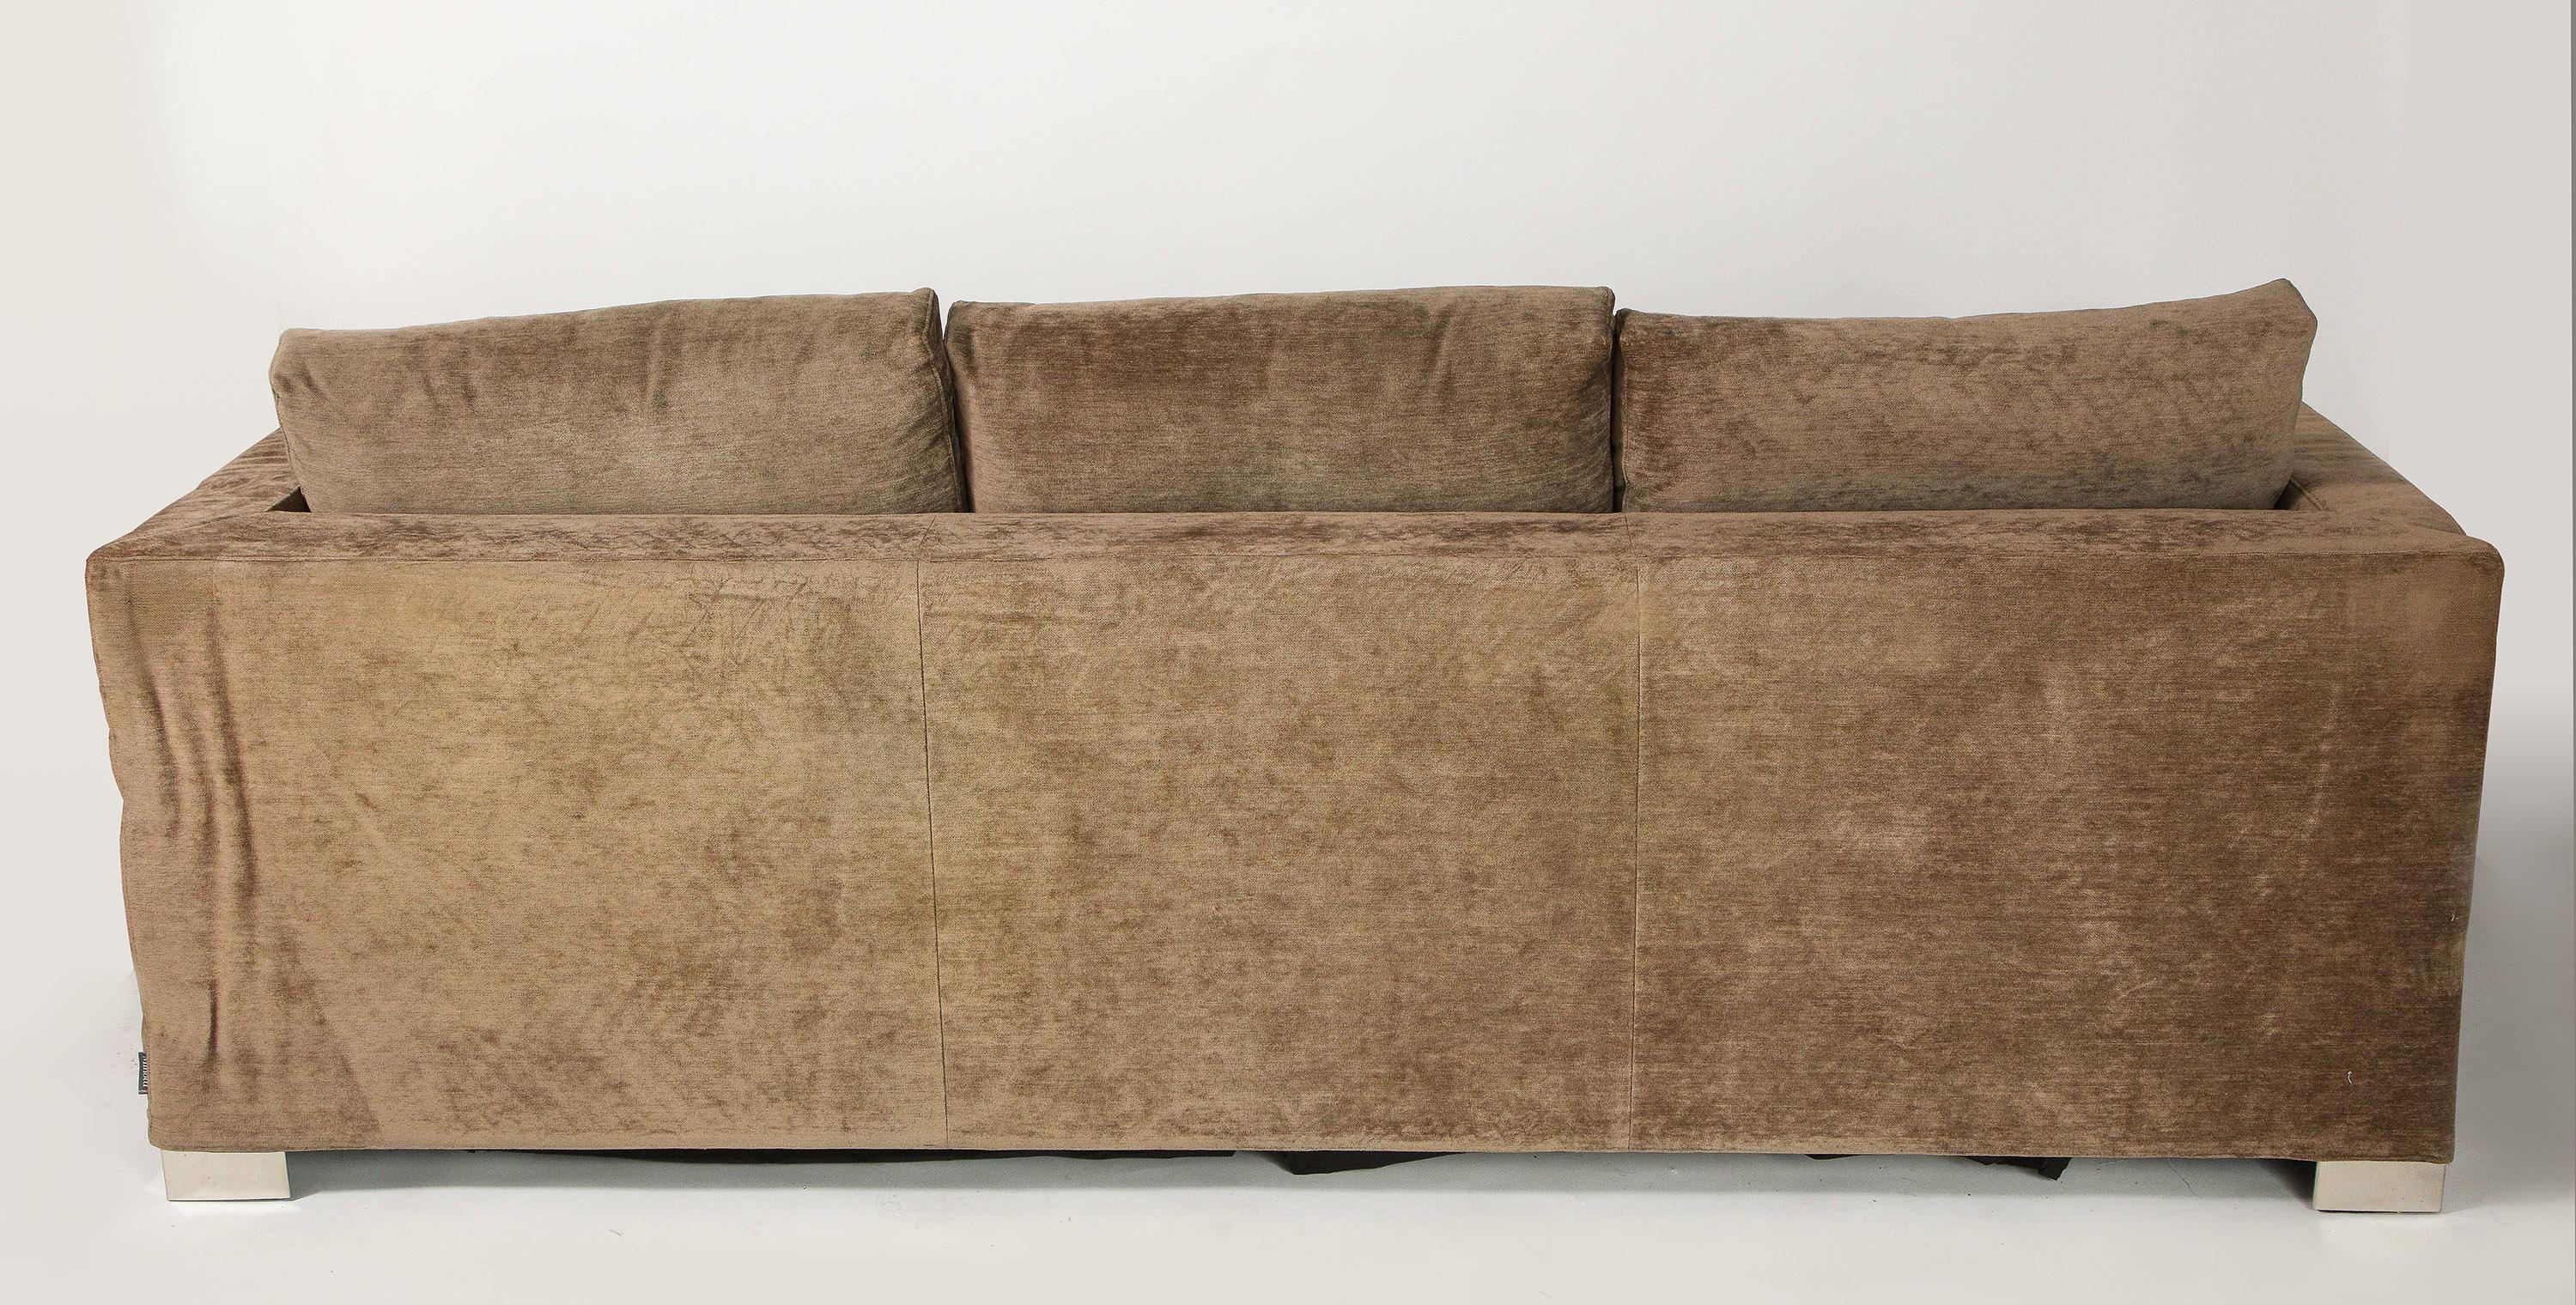 Italian Minotti Three-Seat Sleeper Sofa